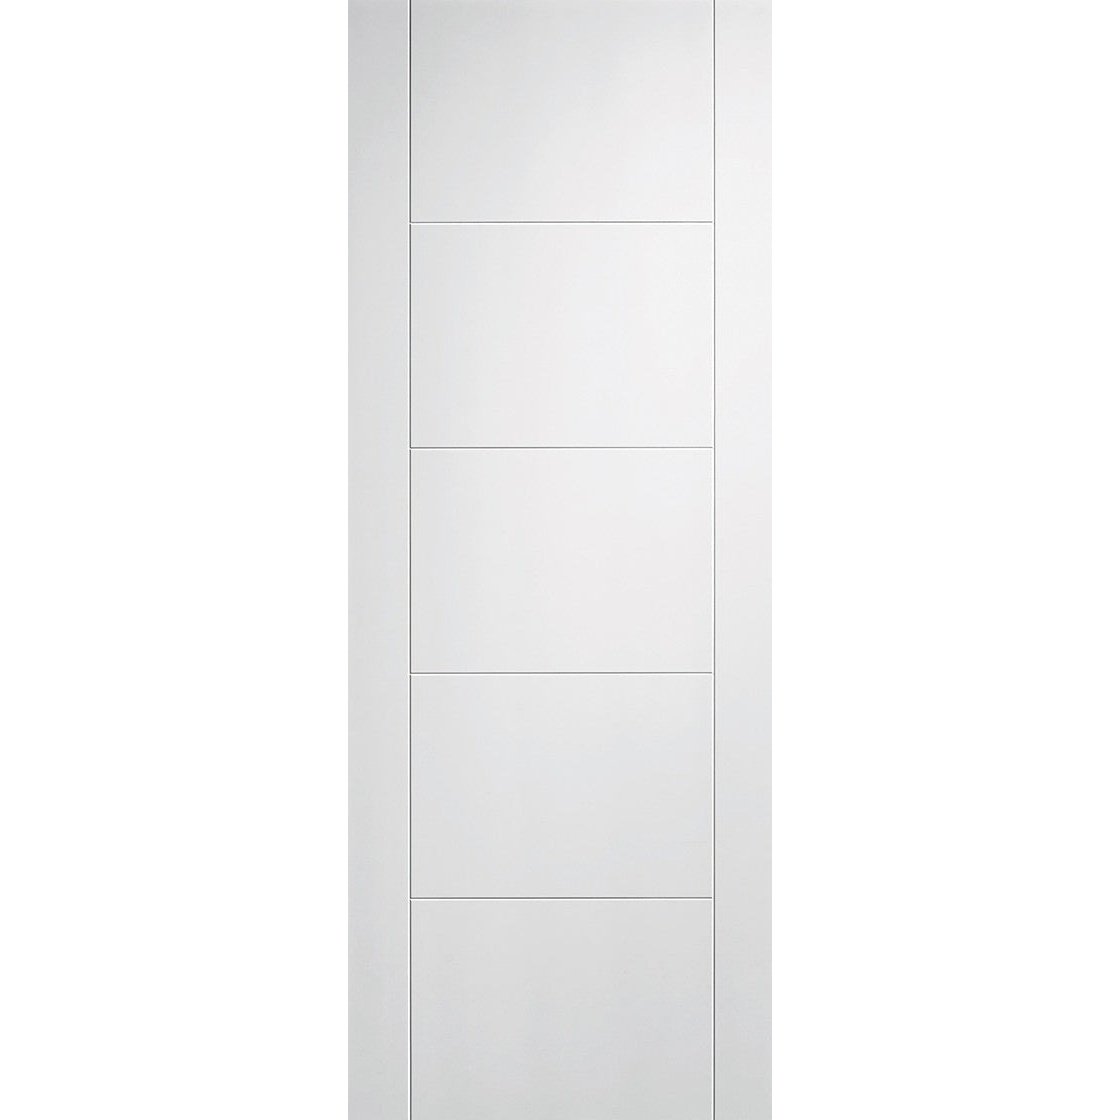 White Linear Style Internal Door (standard and fire door)